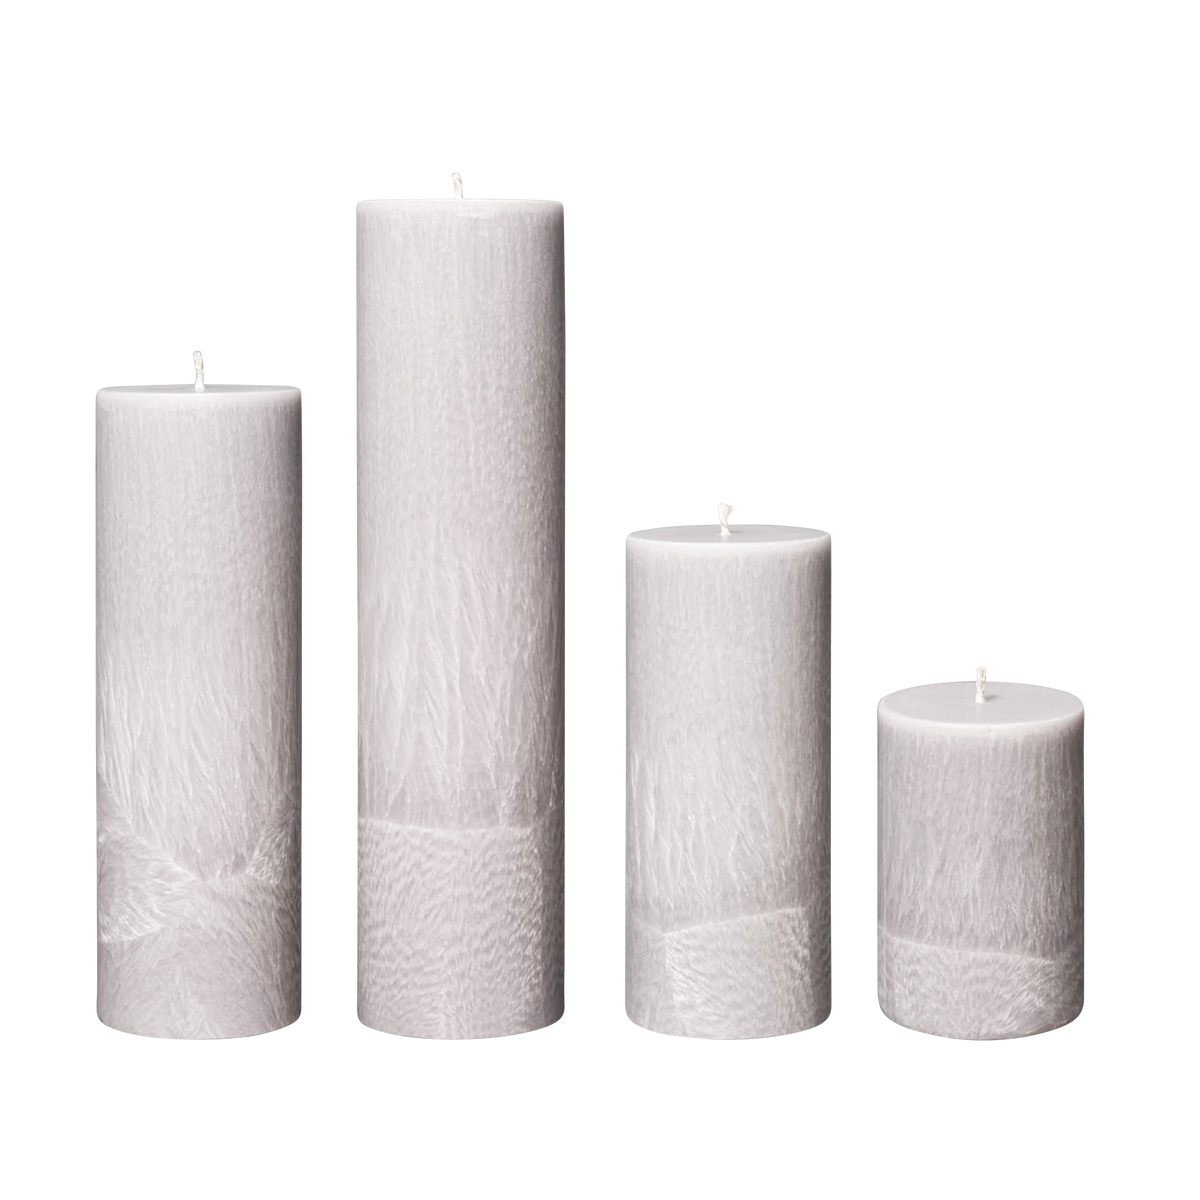 grey pillar candles